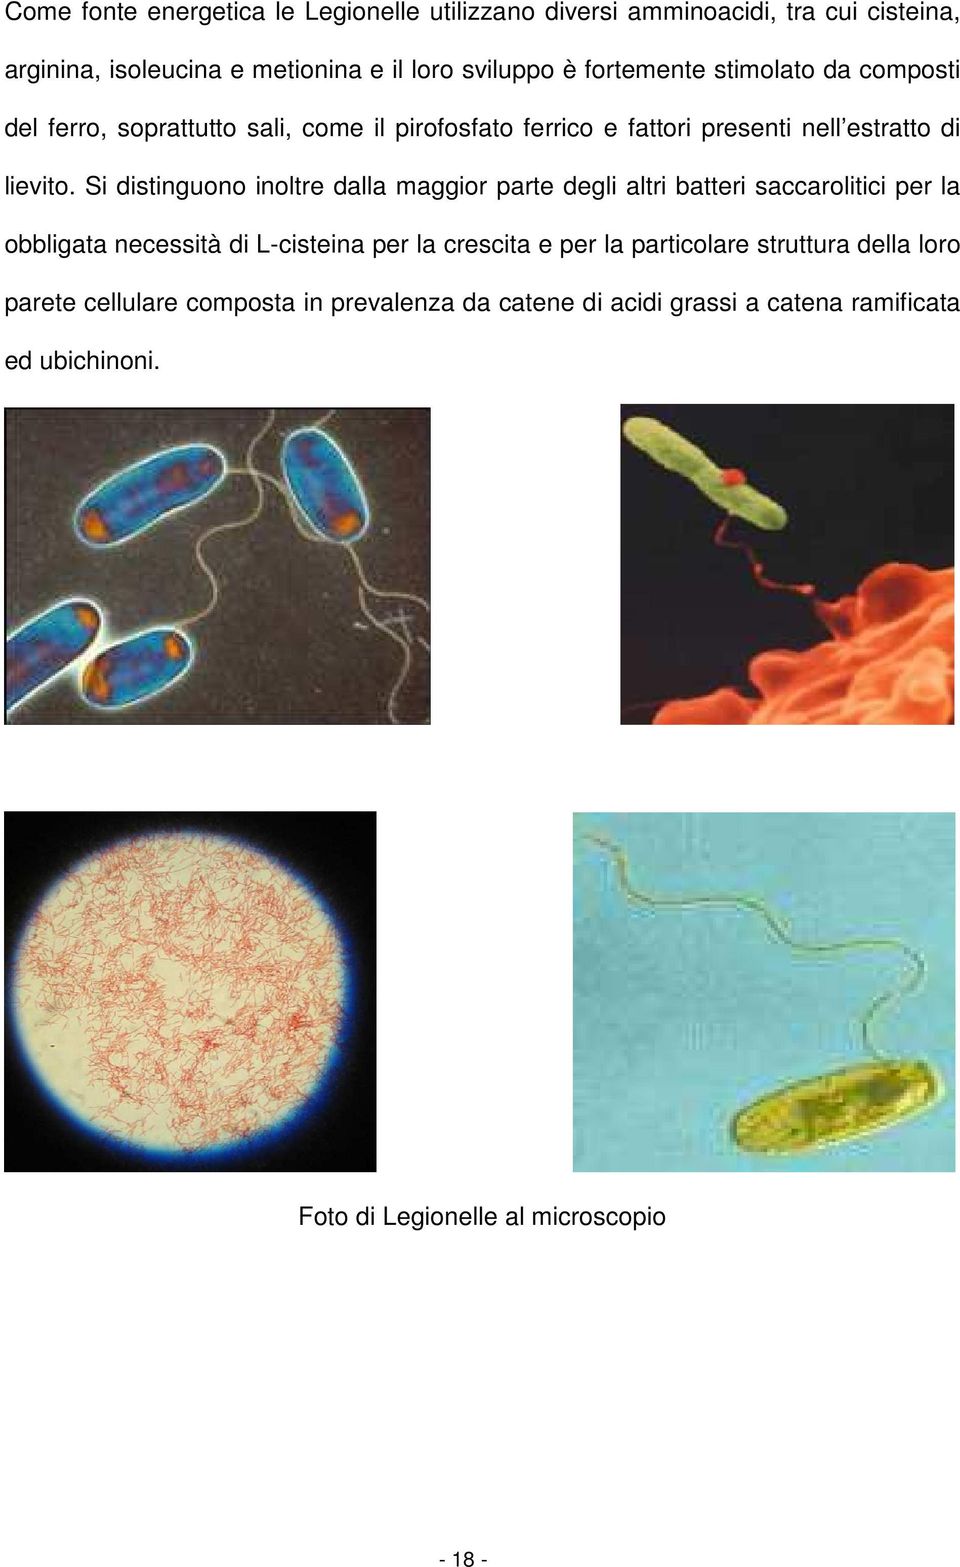 Si distinguono inoltre dalla maggior parte degli altri batteri saccarolitici per la obbligata necessità di L-cisteina per la crescita e per la